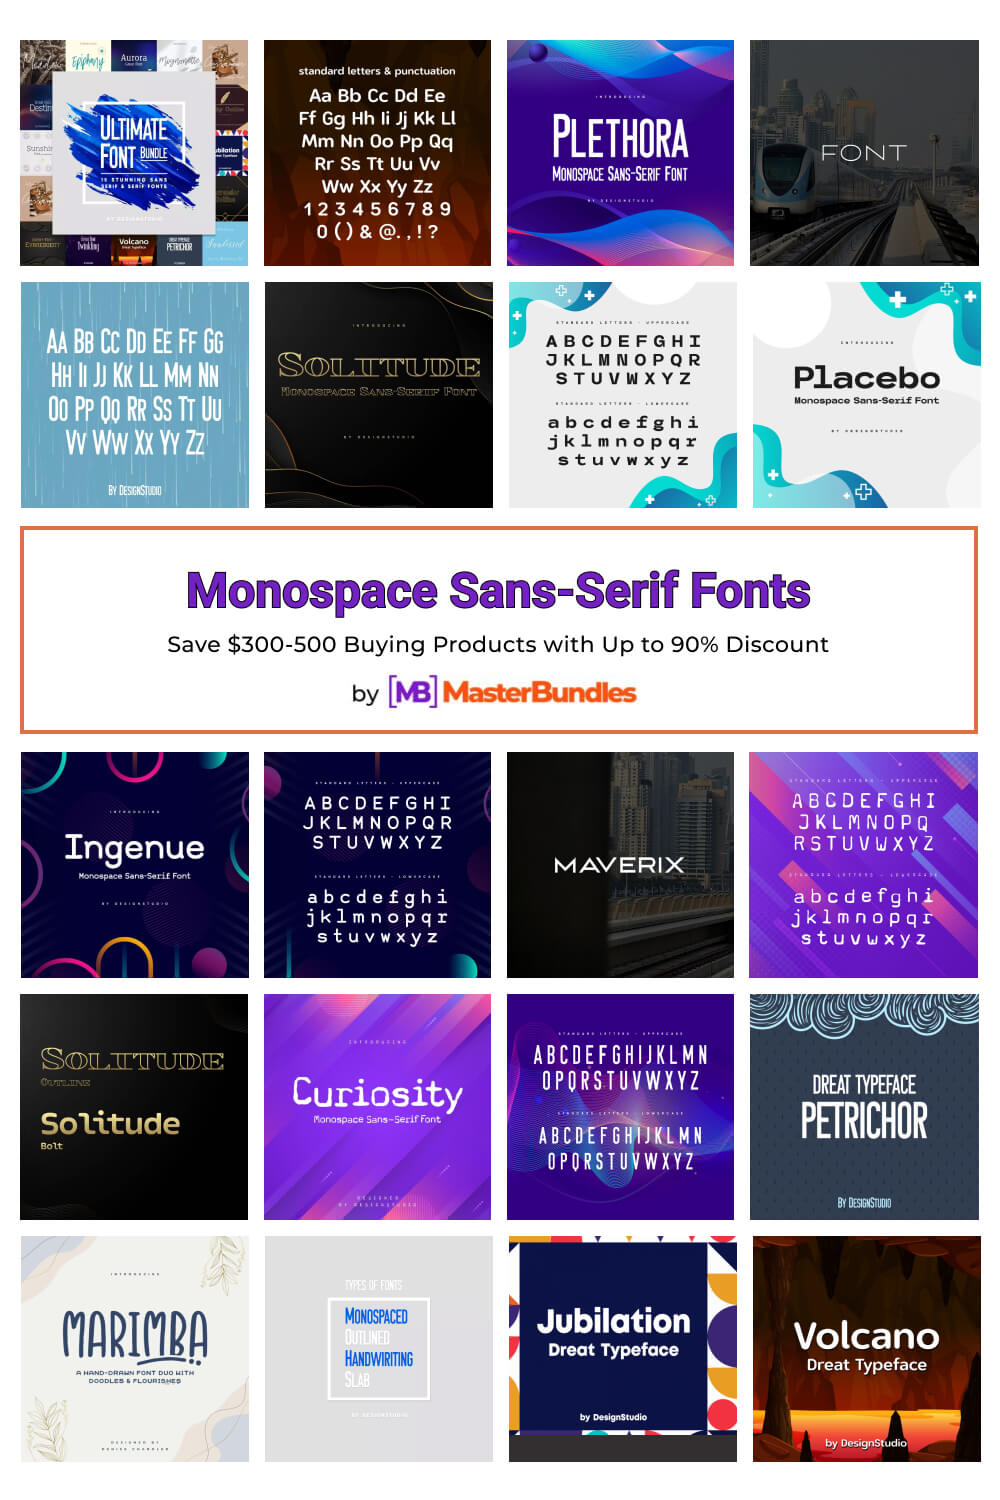 monospace sans serif fonts pinterest image.